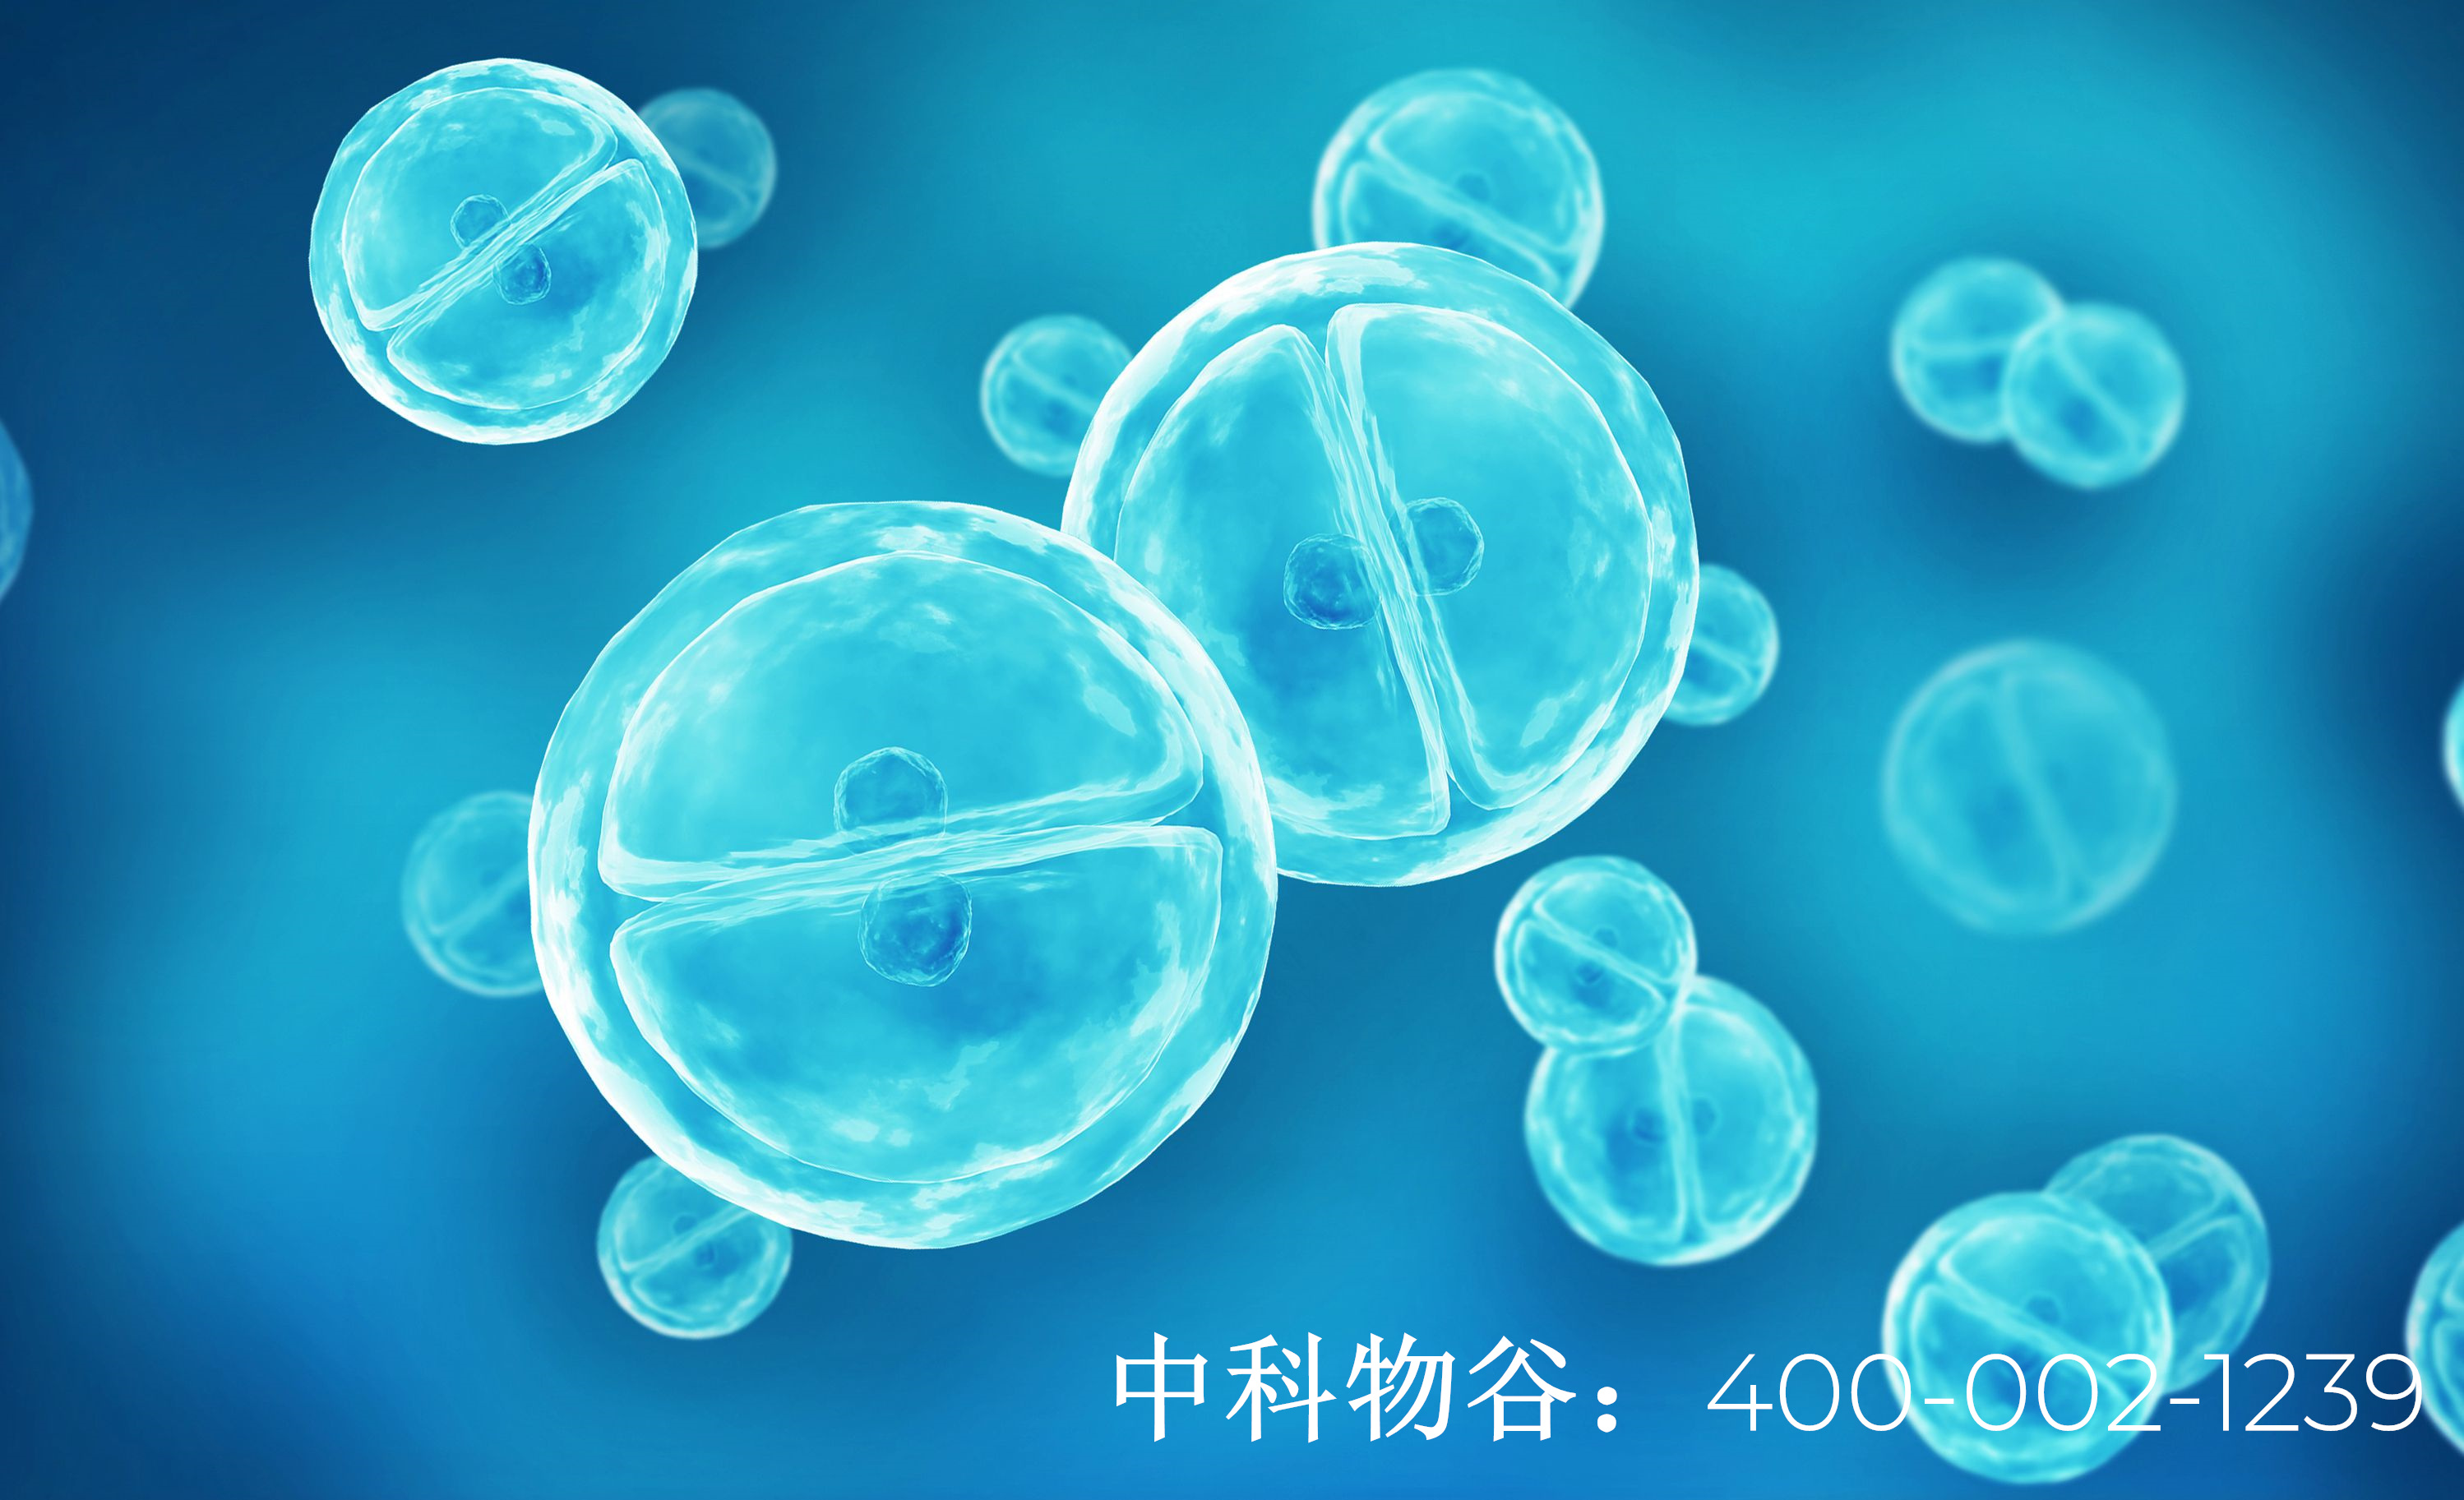 北京中科物谷nk免疫细胞能治疗卵巢癌吗